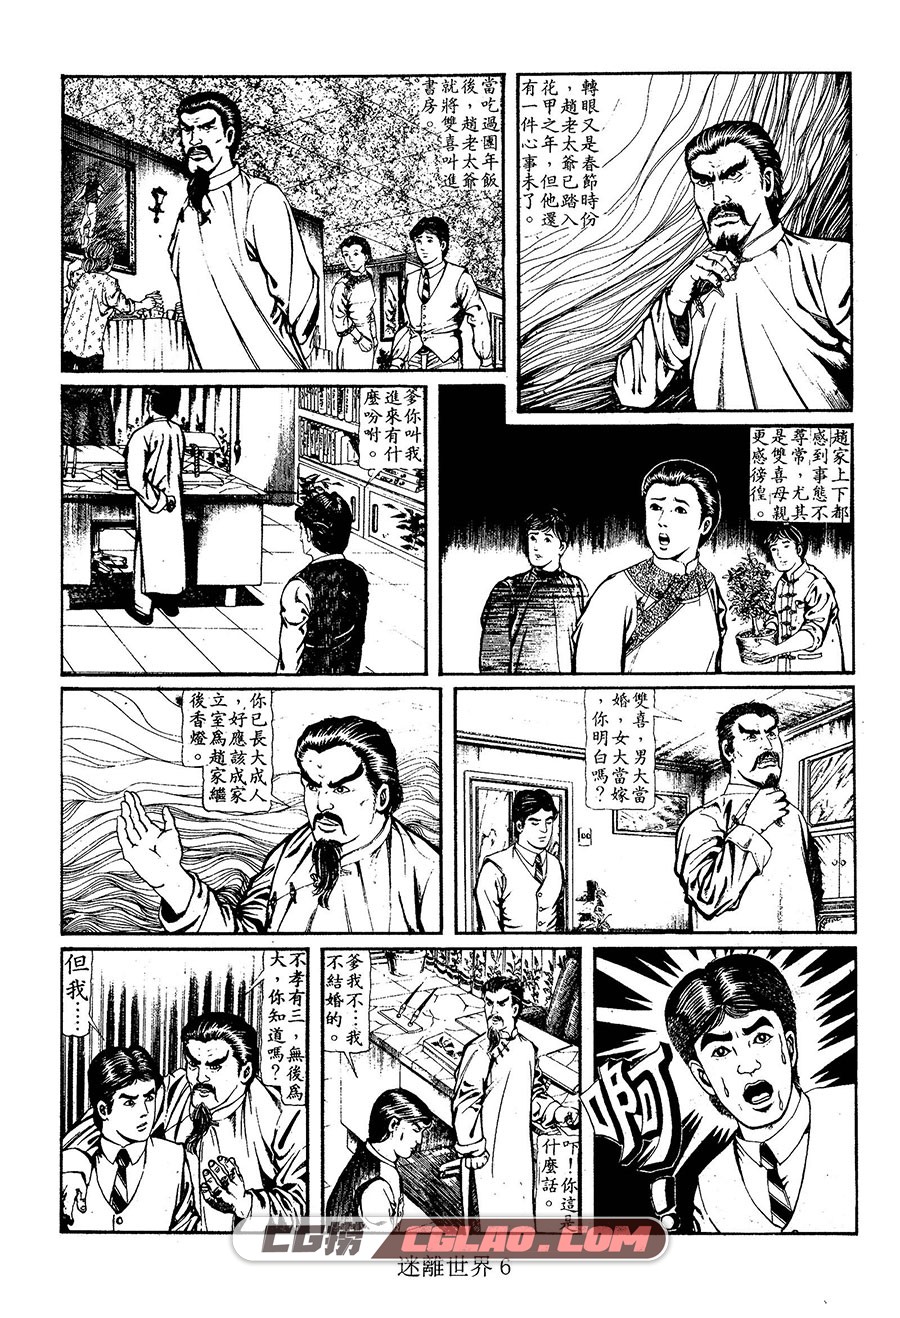 迷离世界 上官小威 1-2册 全集漫画下载 百度网盘,06.jpg